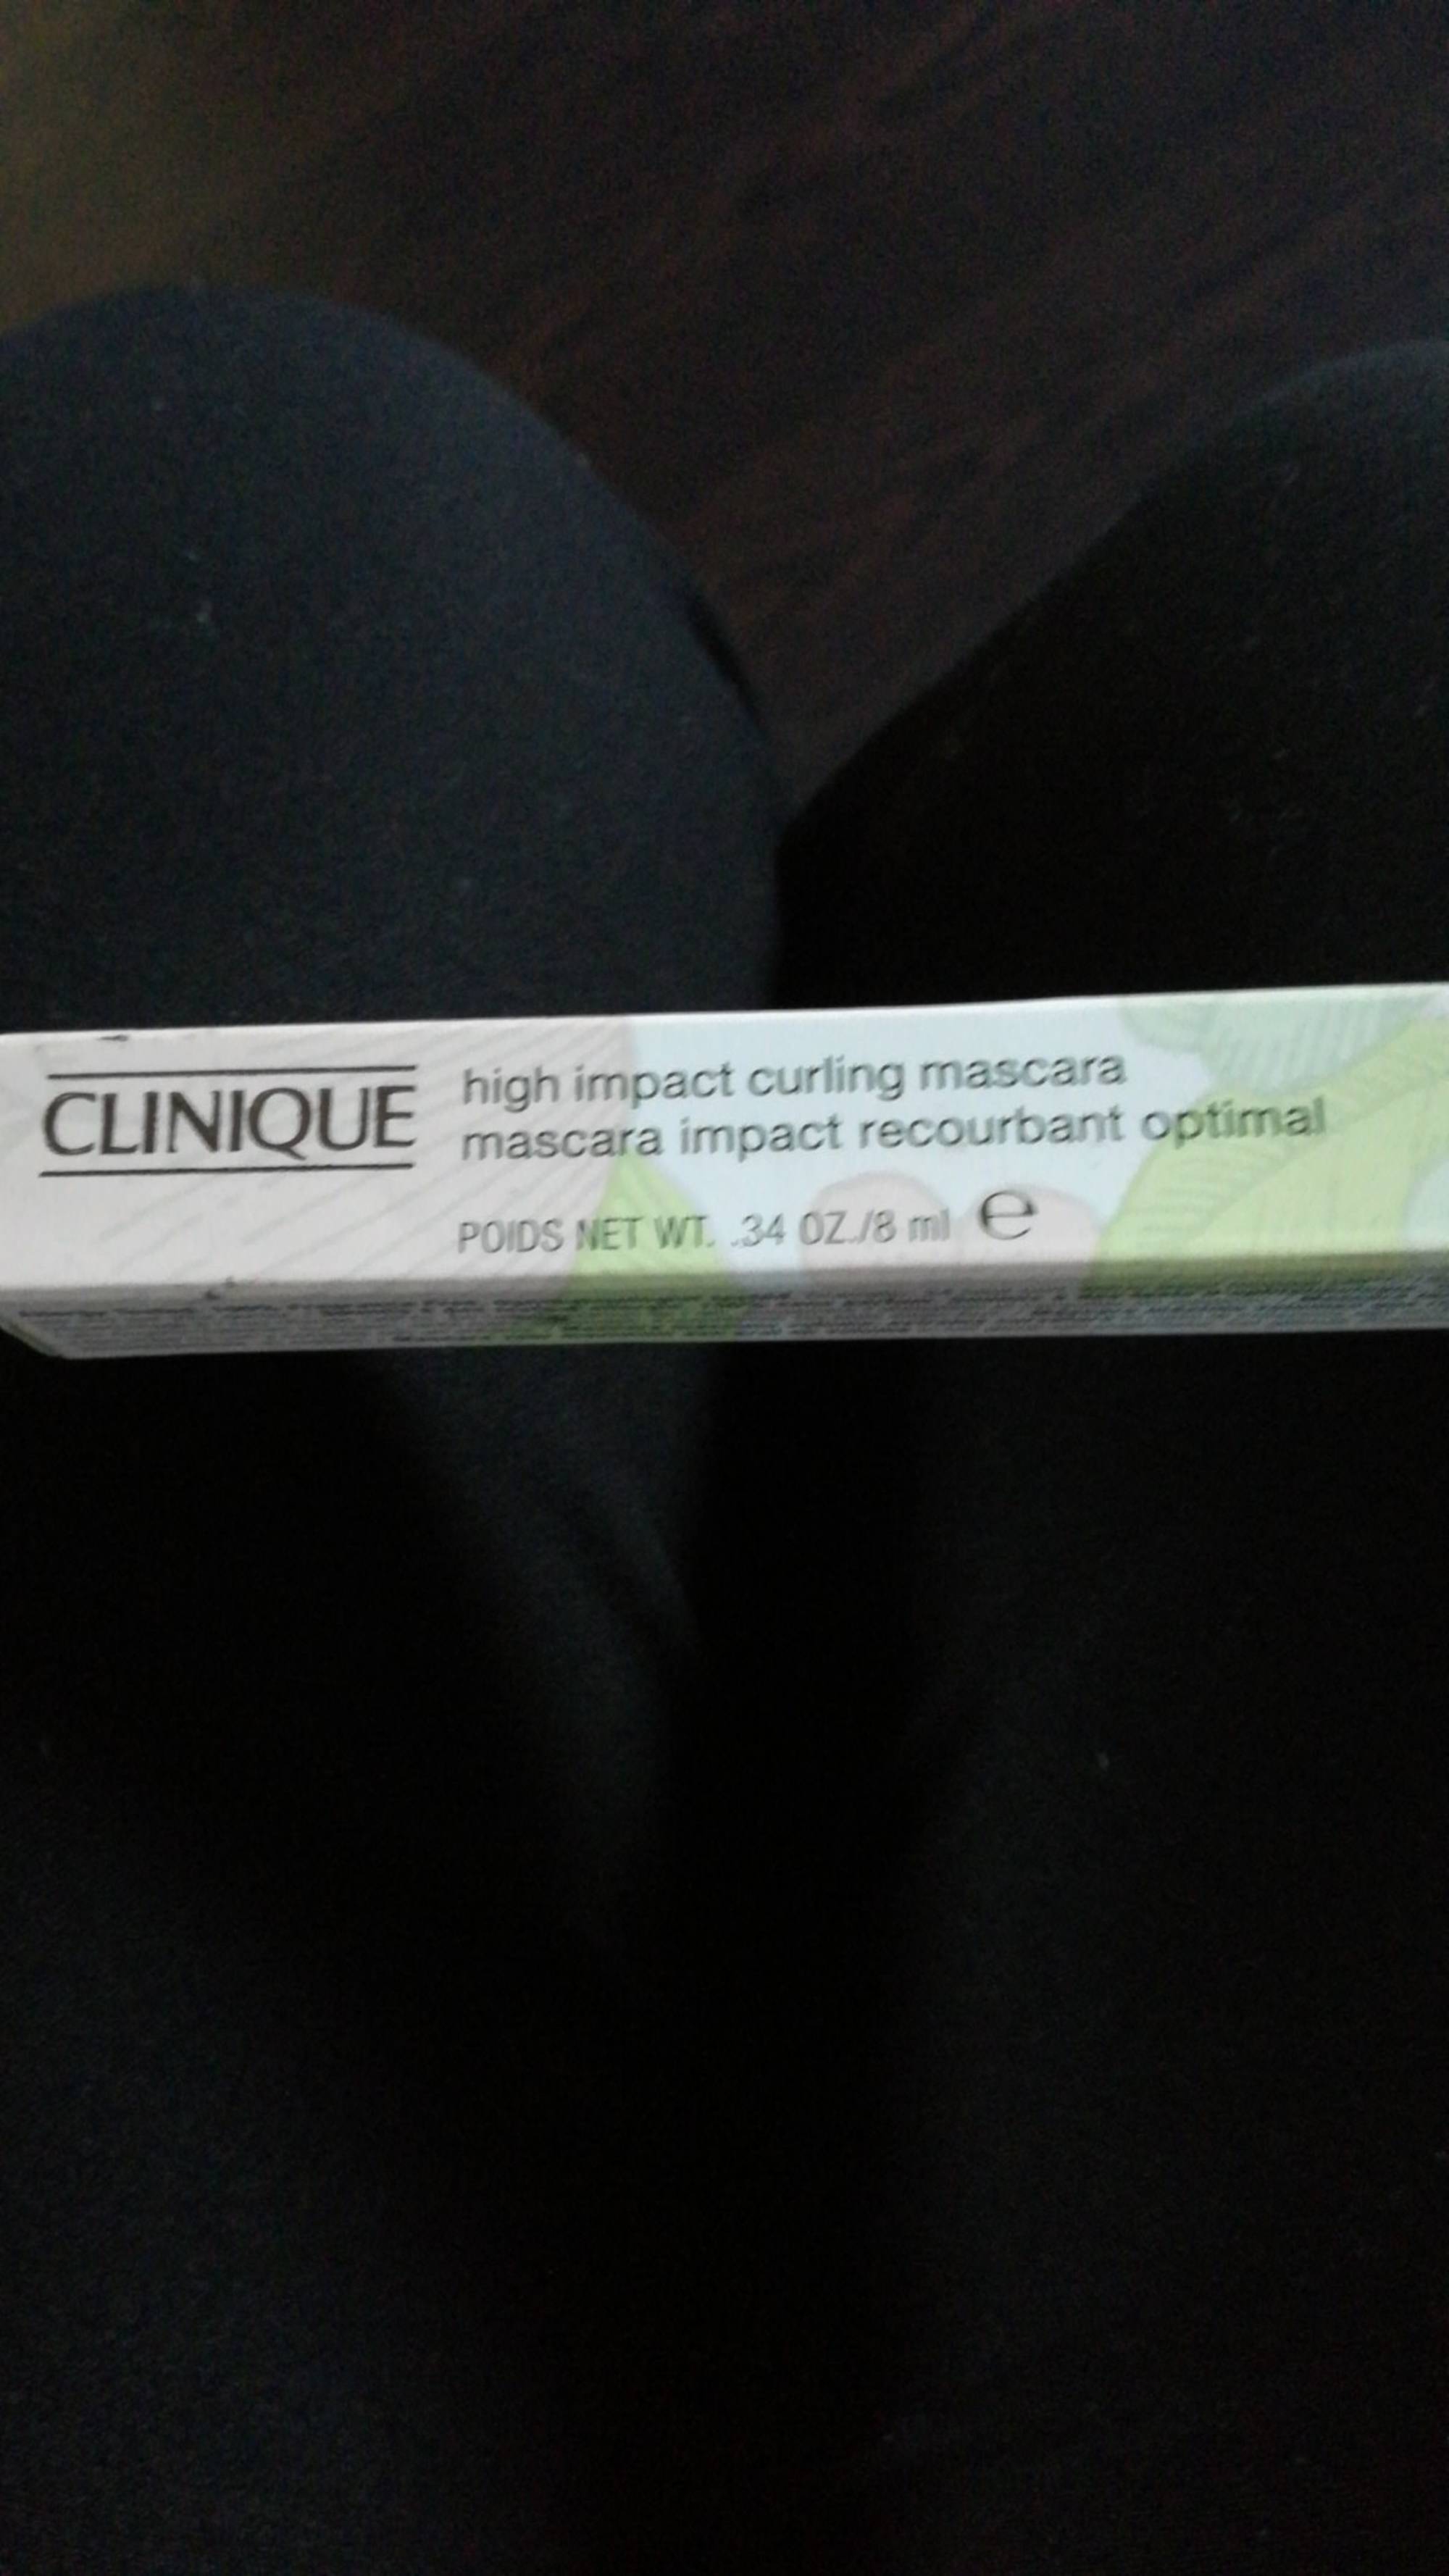 CLINIQUE - Mascara impact recourbant optimal